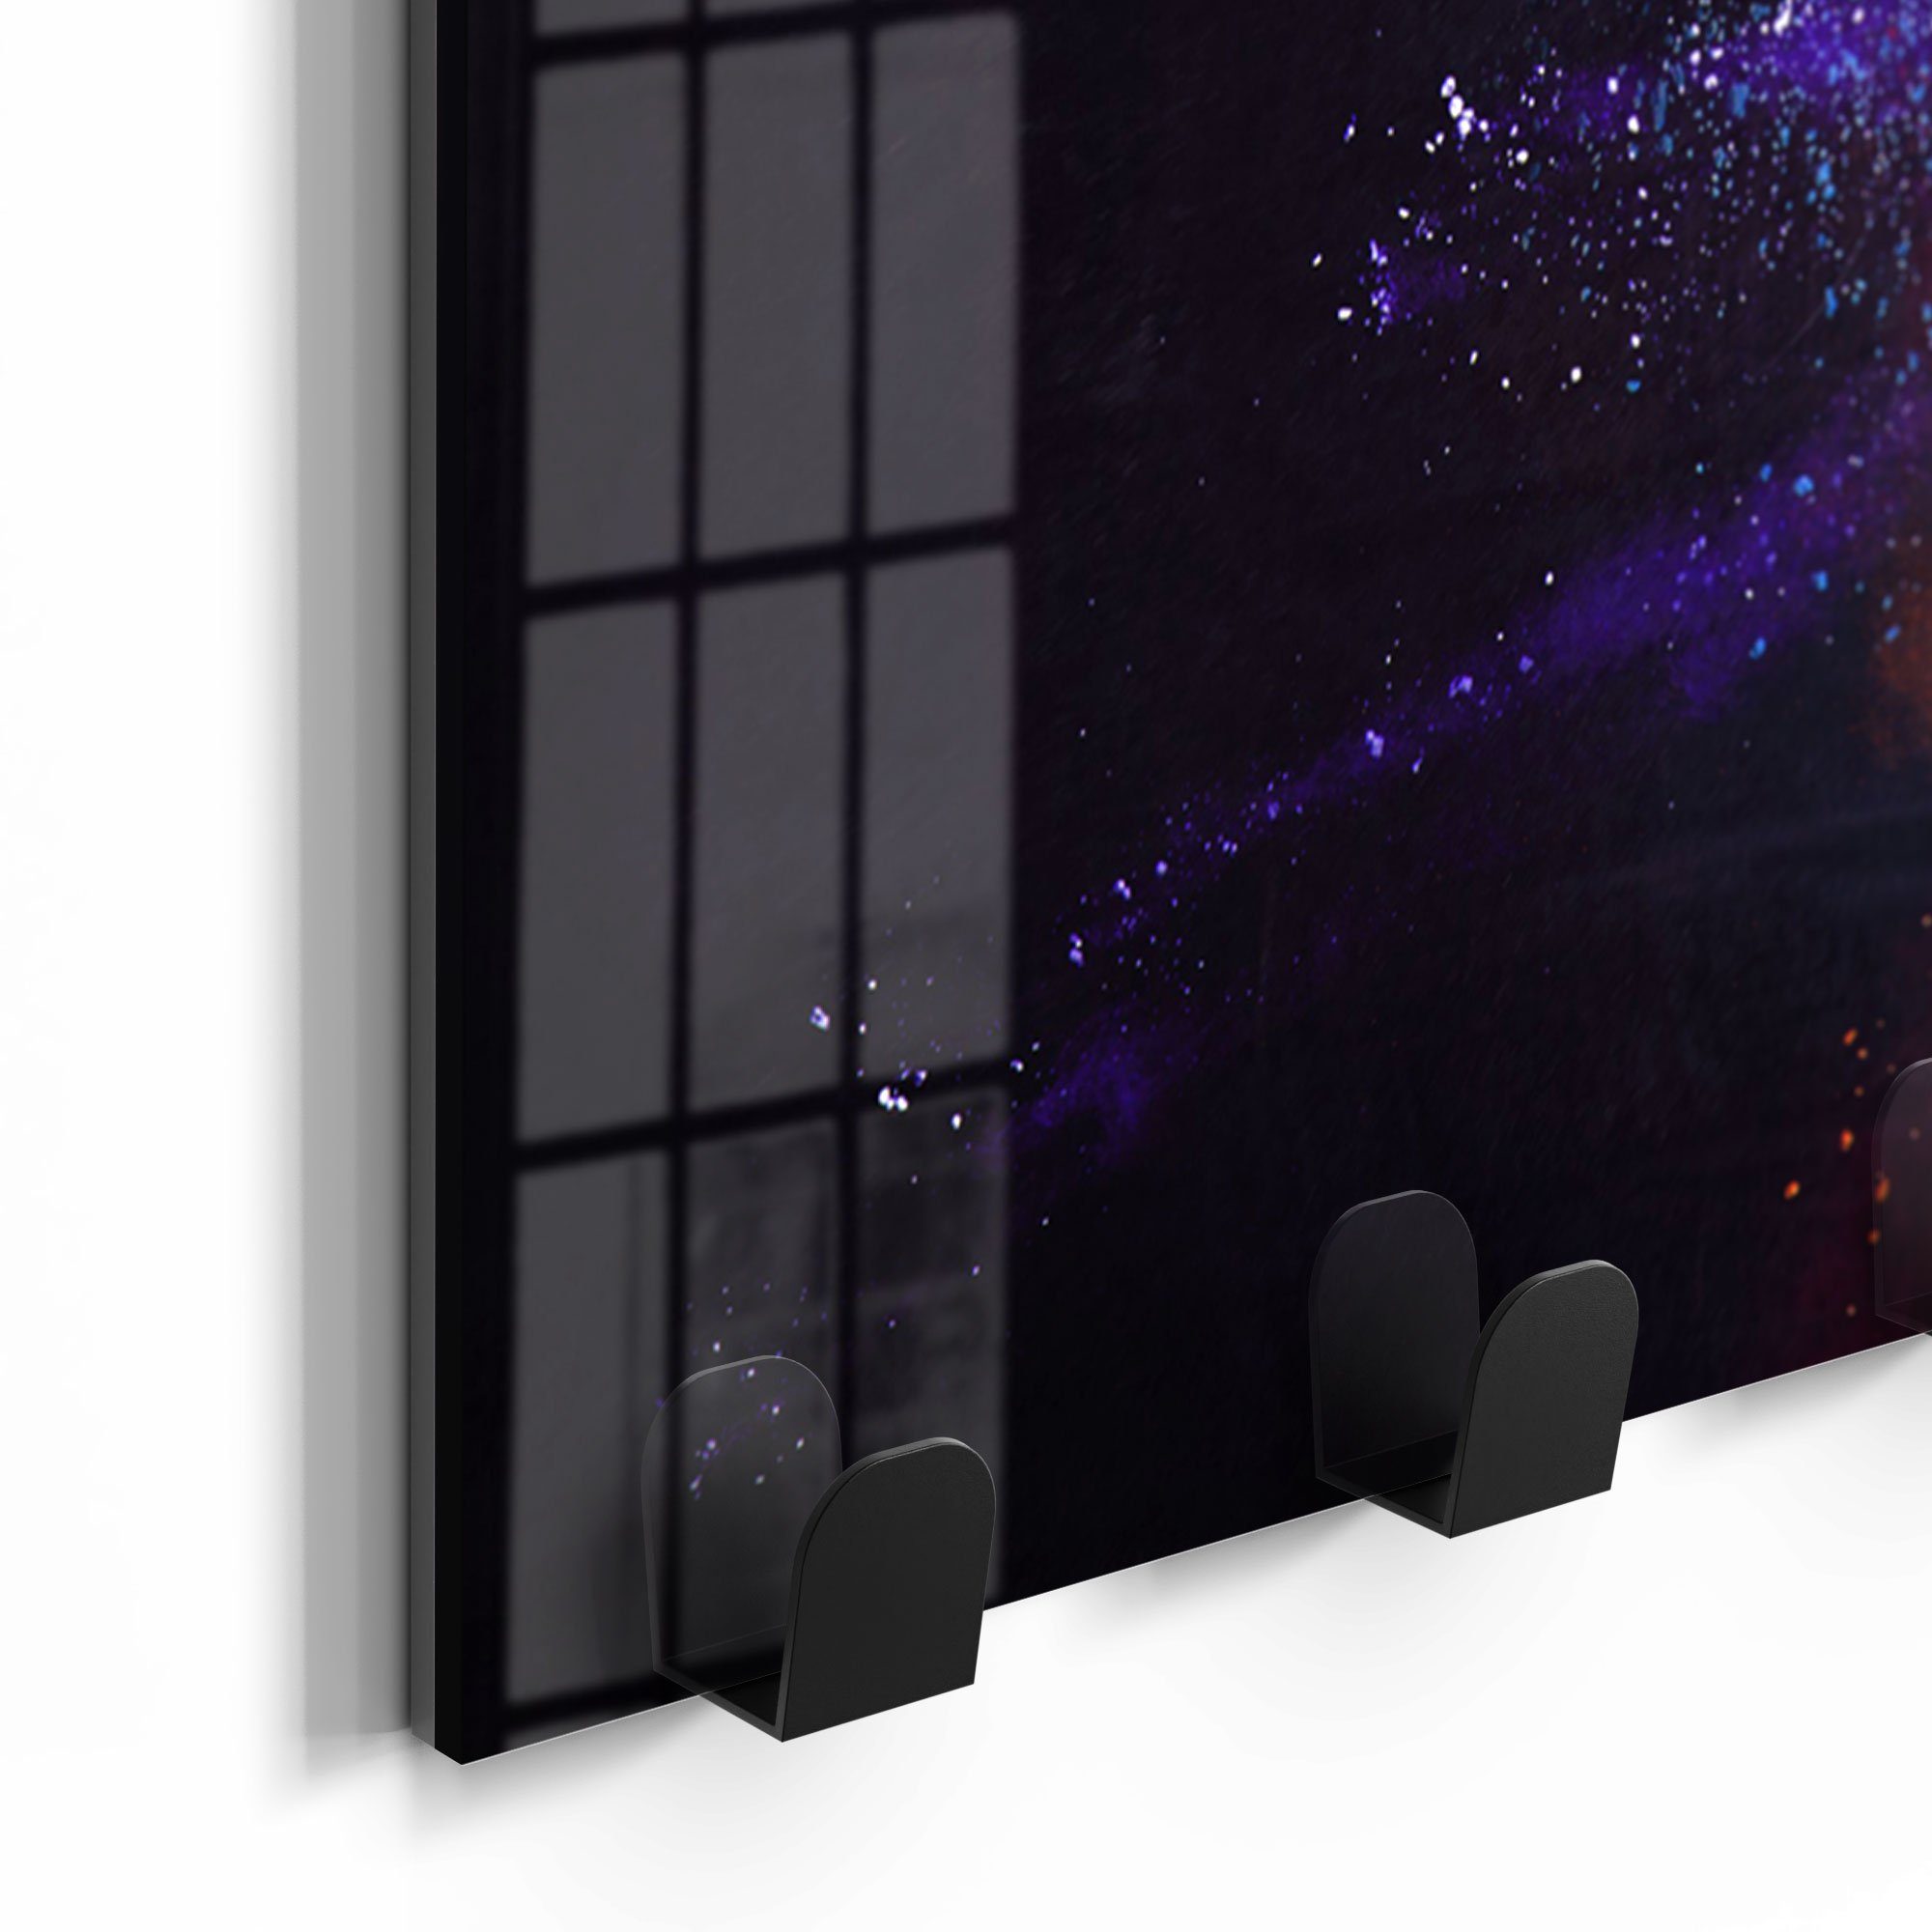 DEQORI Glas Garderobe magnetisch Kleiderhaken Farbknall', beschreibbar Paneel in 'Kosmonaut